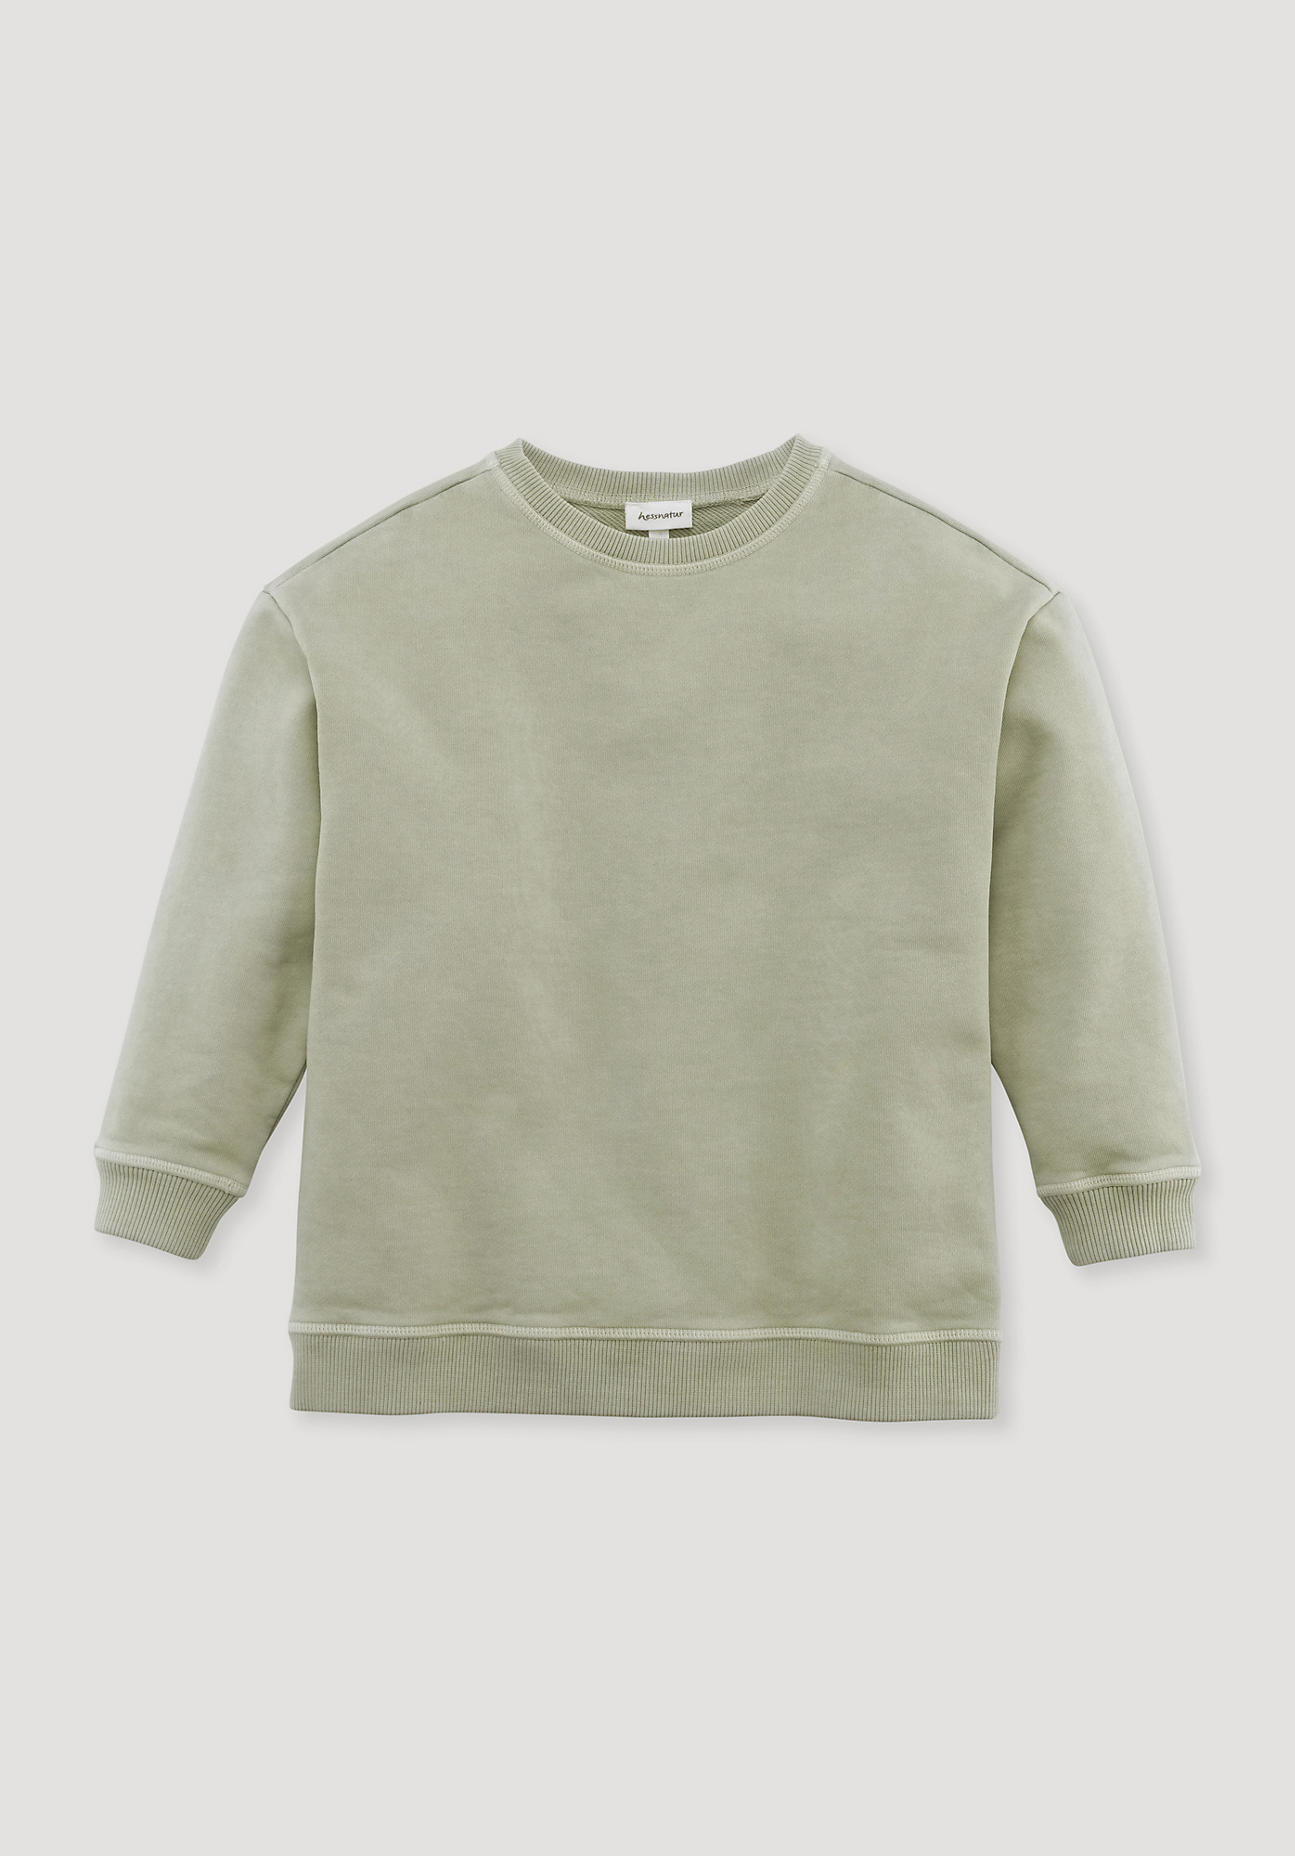 hessnatur Kinder Sweatshirt aus Bio-Baumwolle - grün Größe 98/104